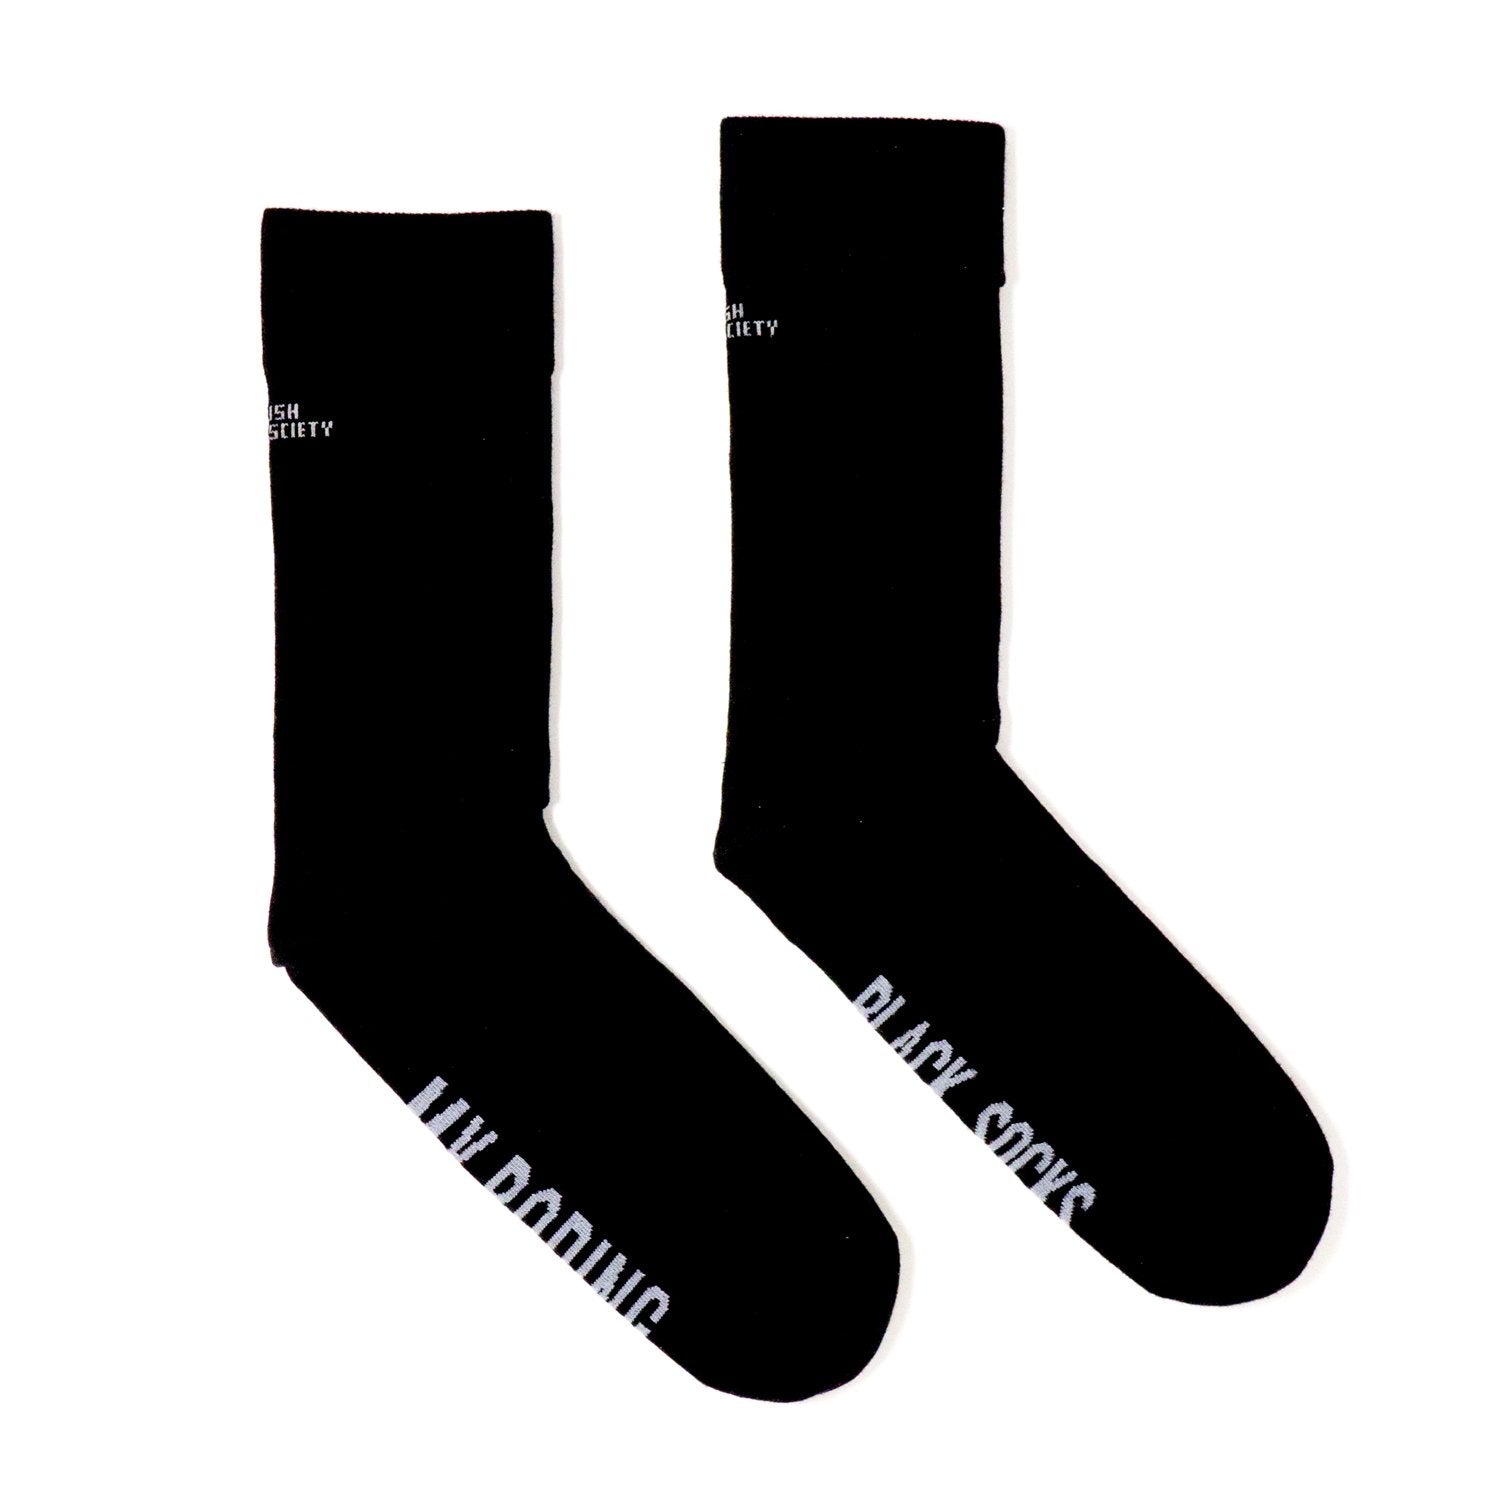 Socks - Boring Black Socks